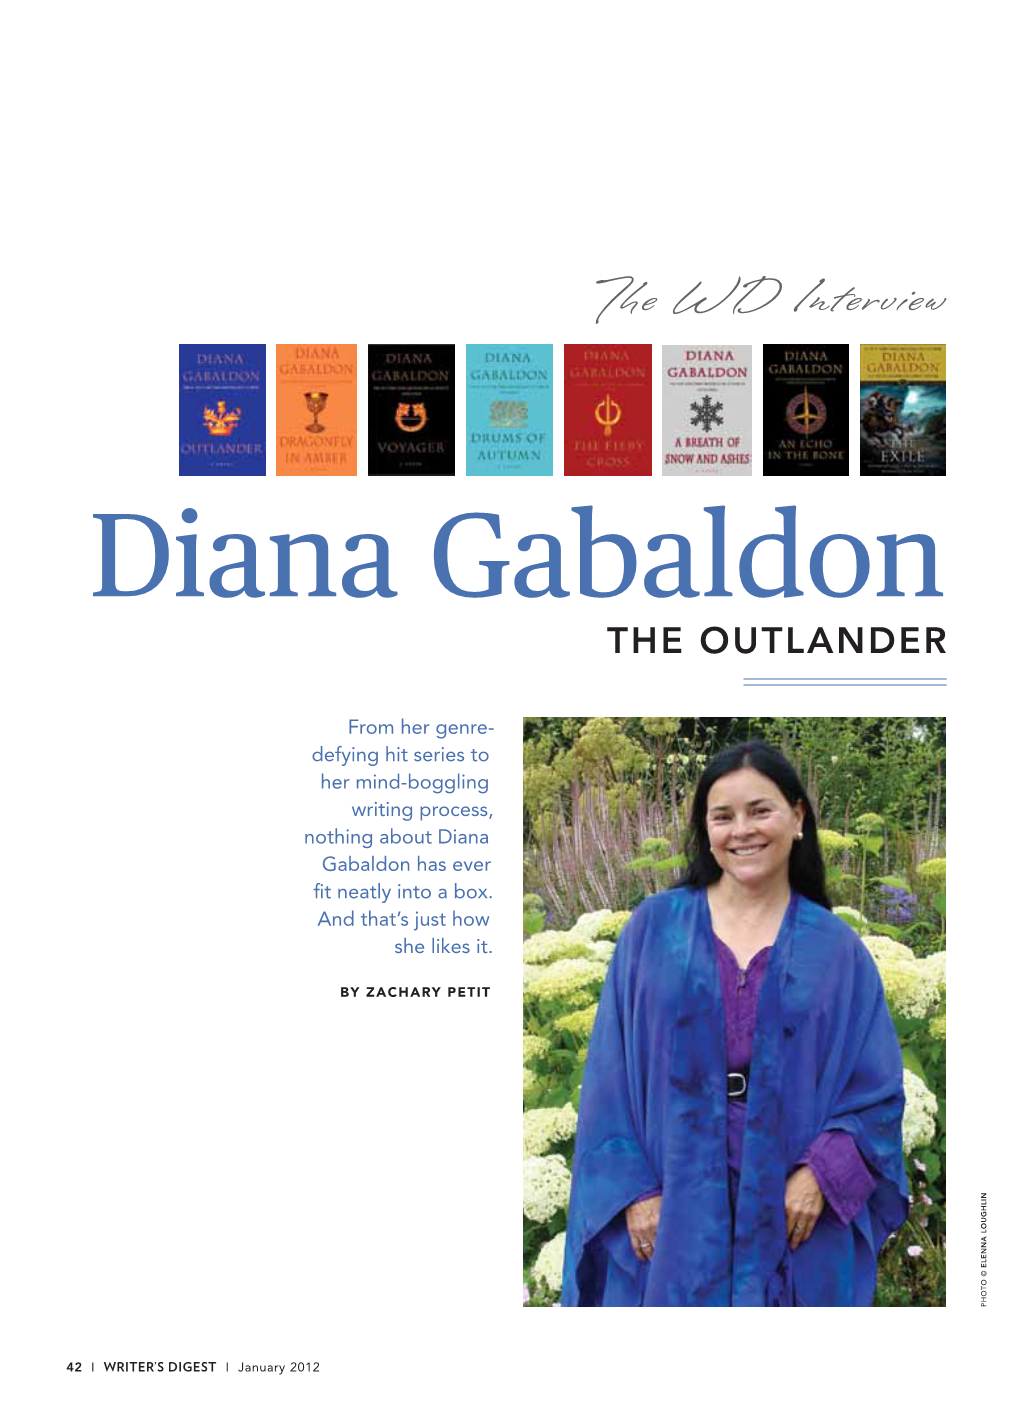 Diana Gabaldon the OUTLANDER